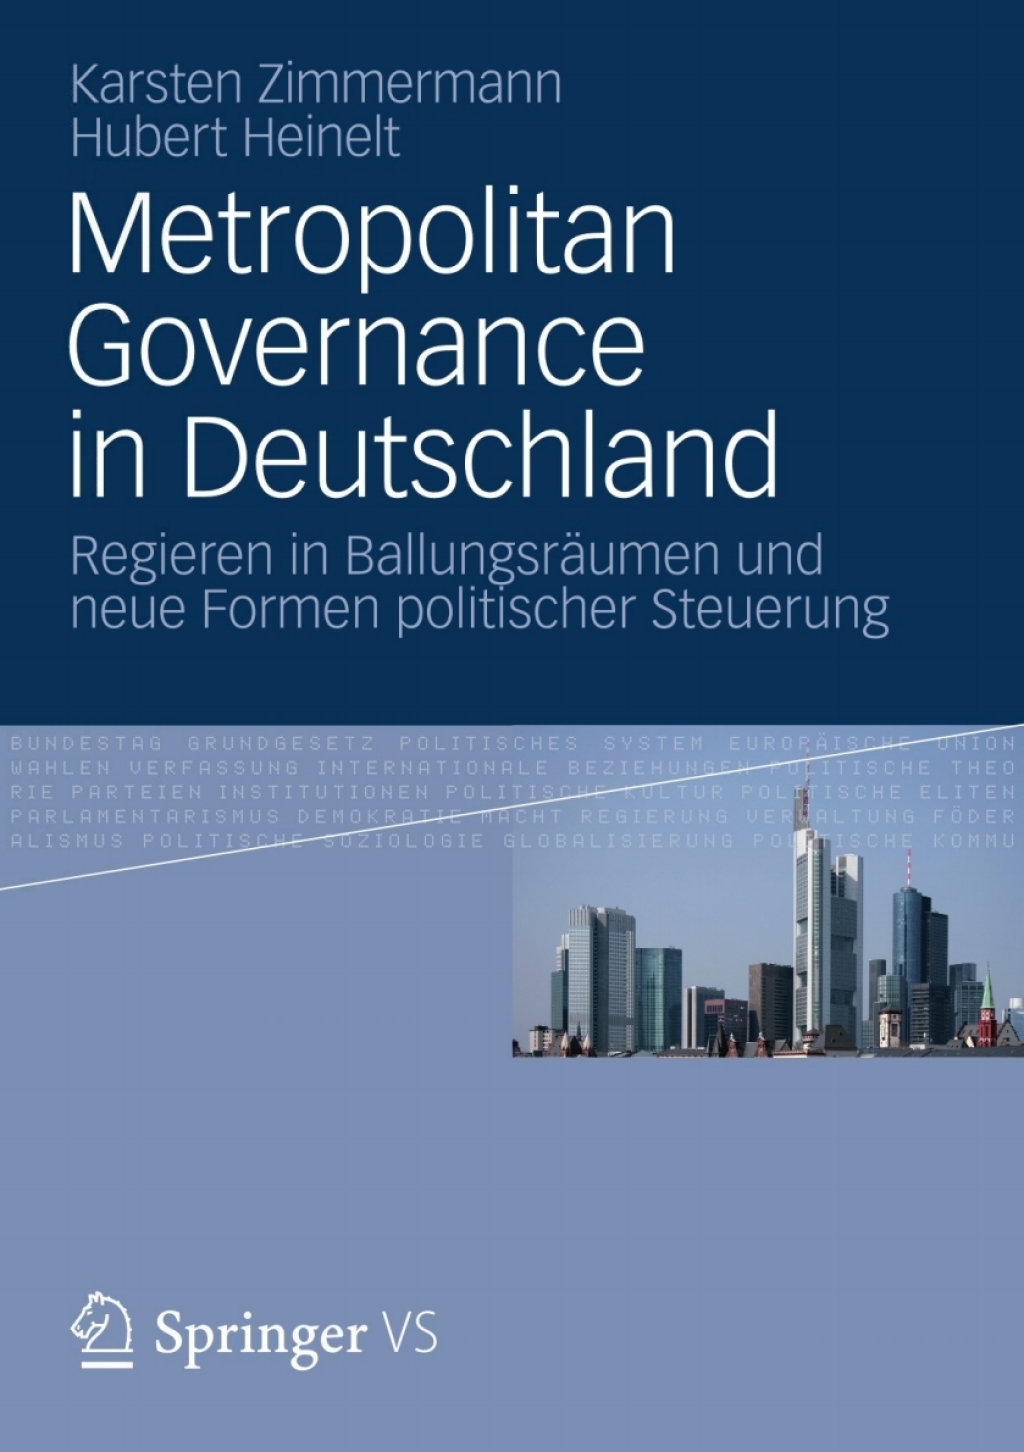 Metropolitan Governance in Deutschland (eBook Rental) - Karsten Zimmermann; Hubert Heinelt,